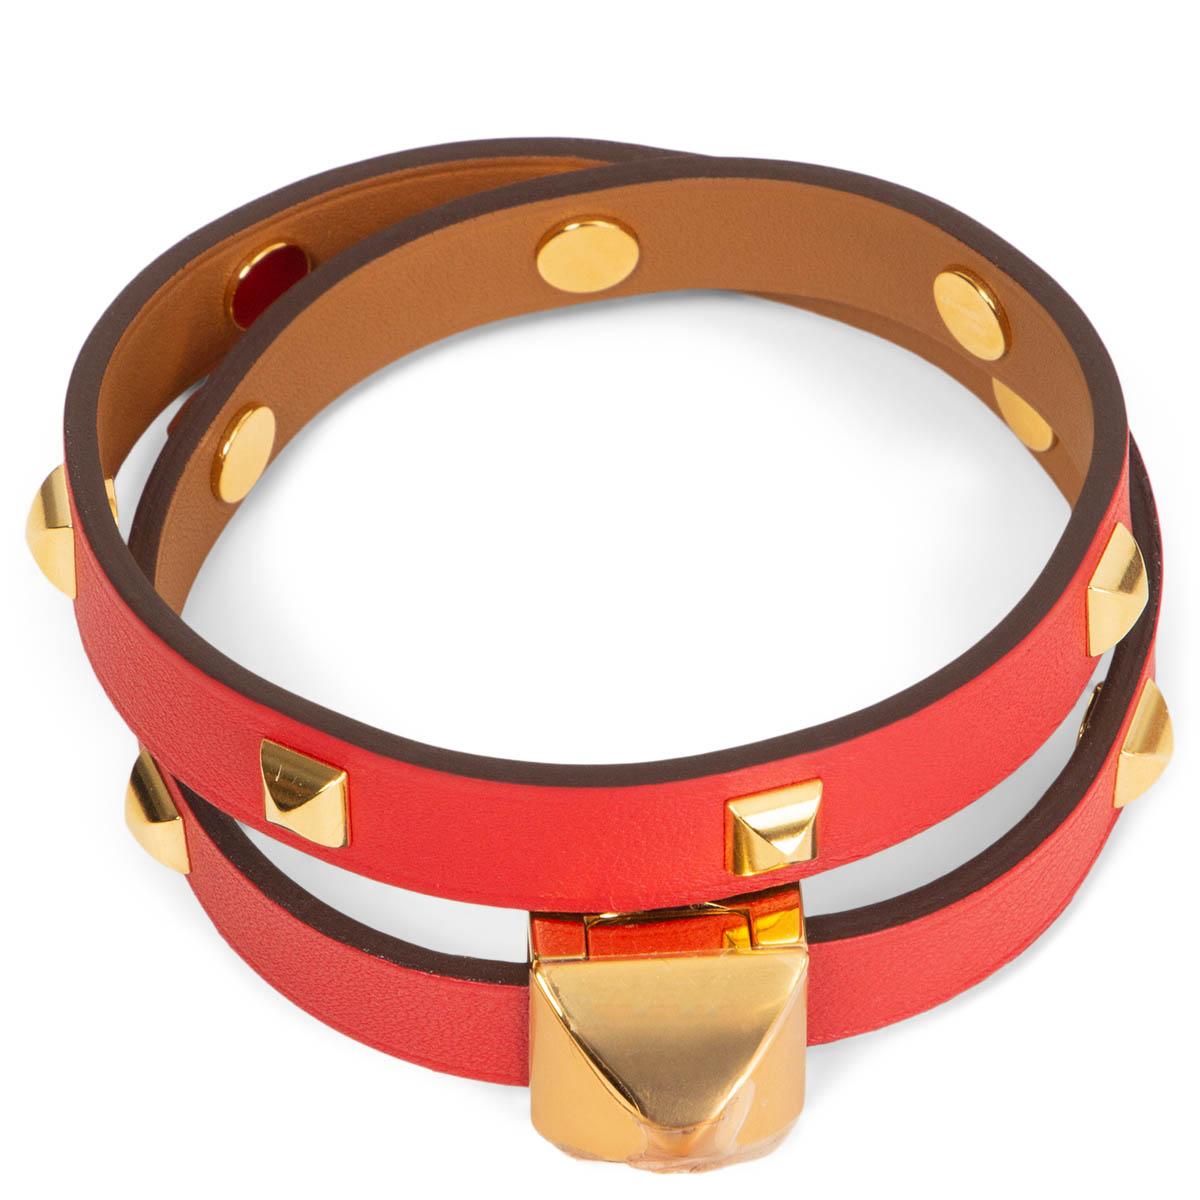 100% authentique bracelet Hermès Infini Clouté Double Tour en cuir Rouge de Coeur en Veau Swift avec matériel en métal doré. État neuf.  Pas de boîte.

Mesures
Taille de l'étiquette	T3
Largeur	0.9cm (0.4in)
Longueur	36.6cm (14.3in)
Matériel